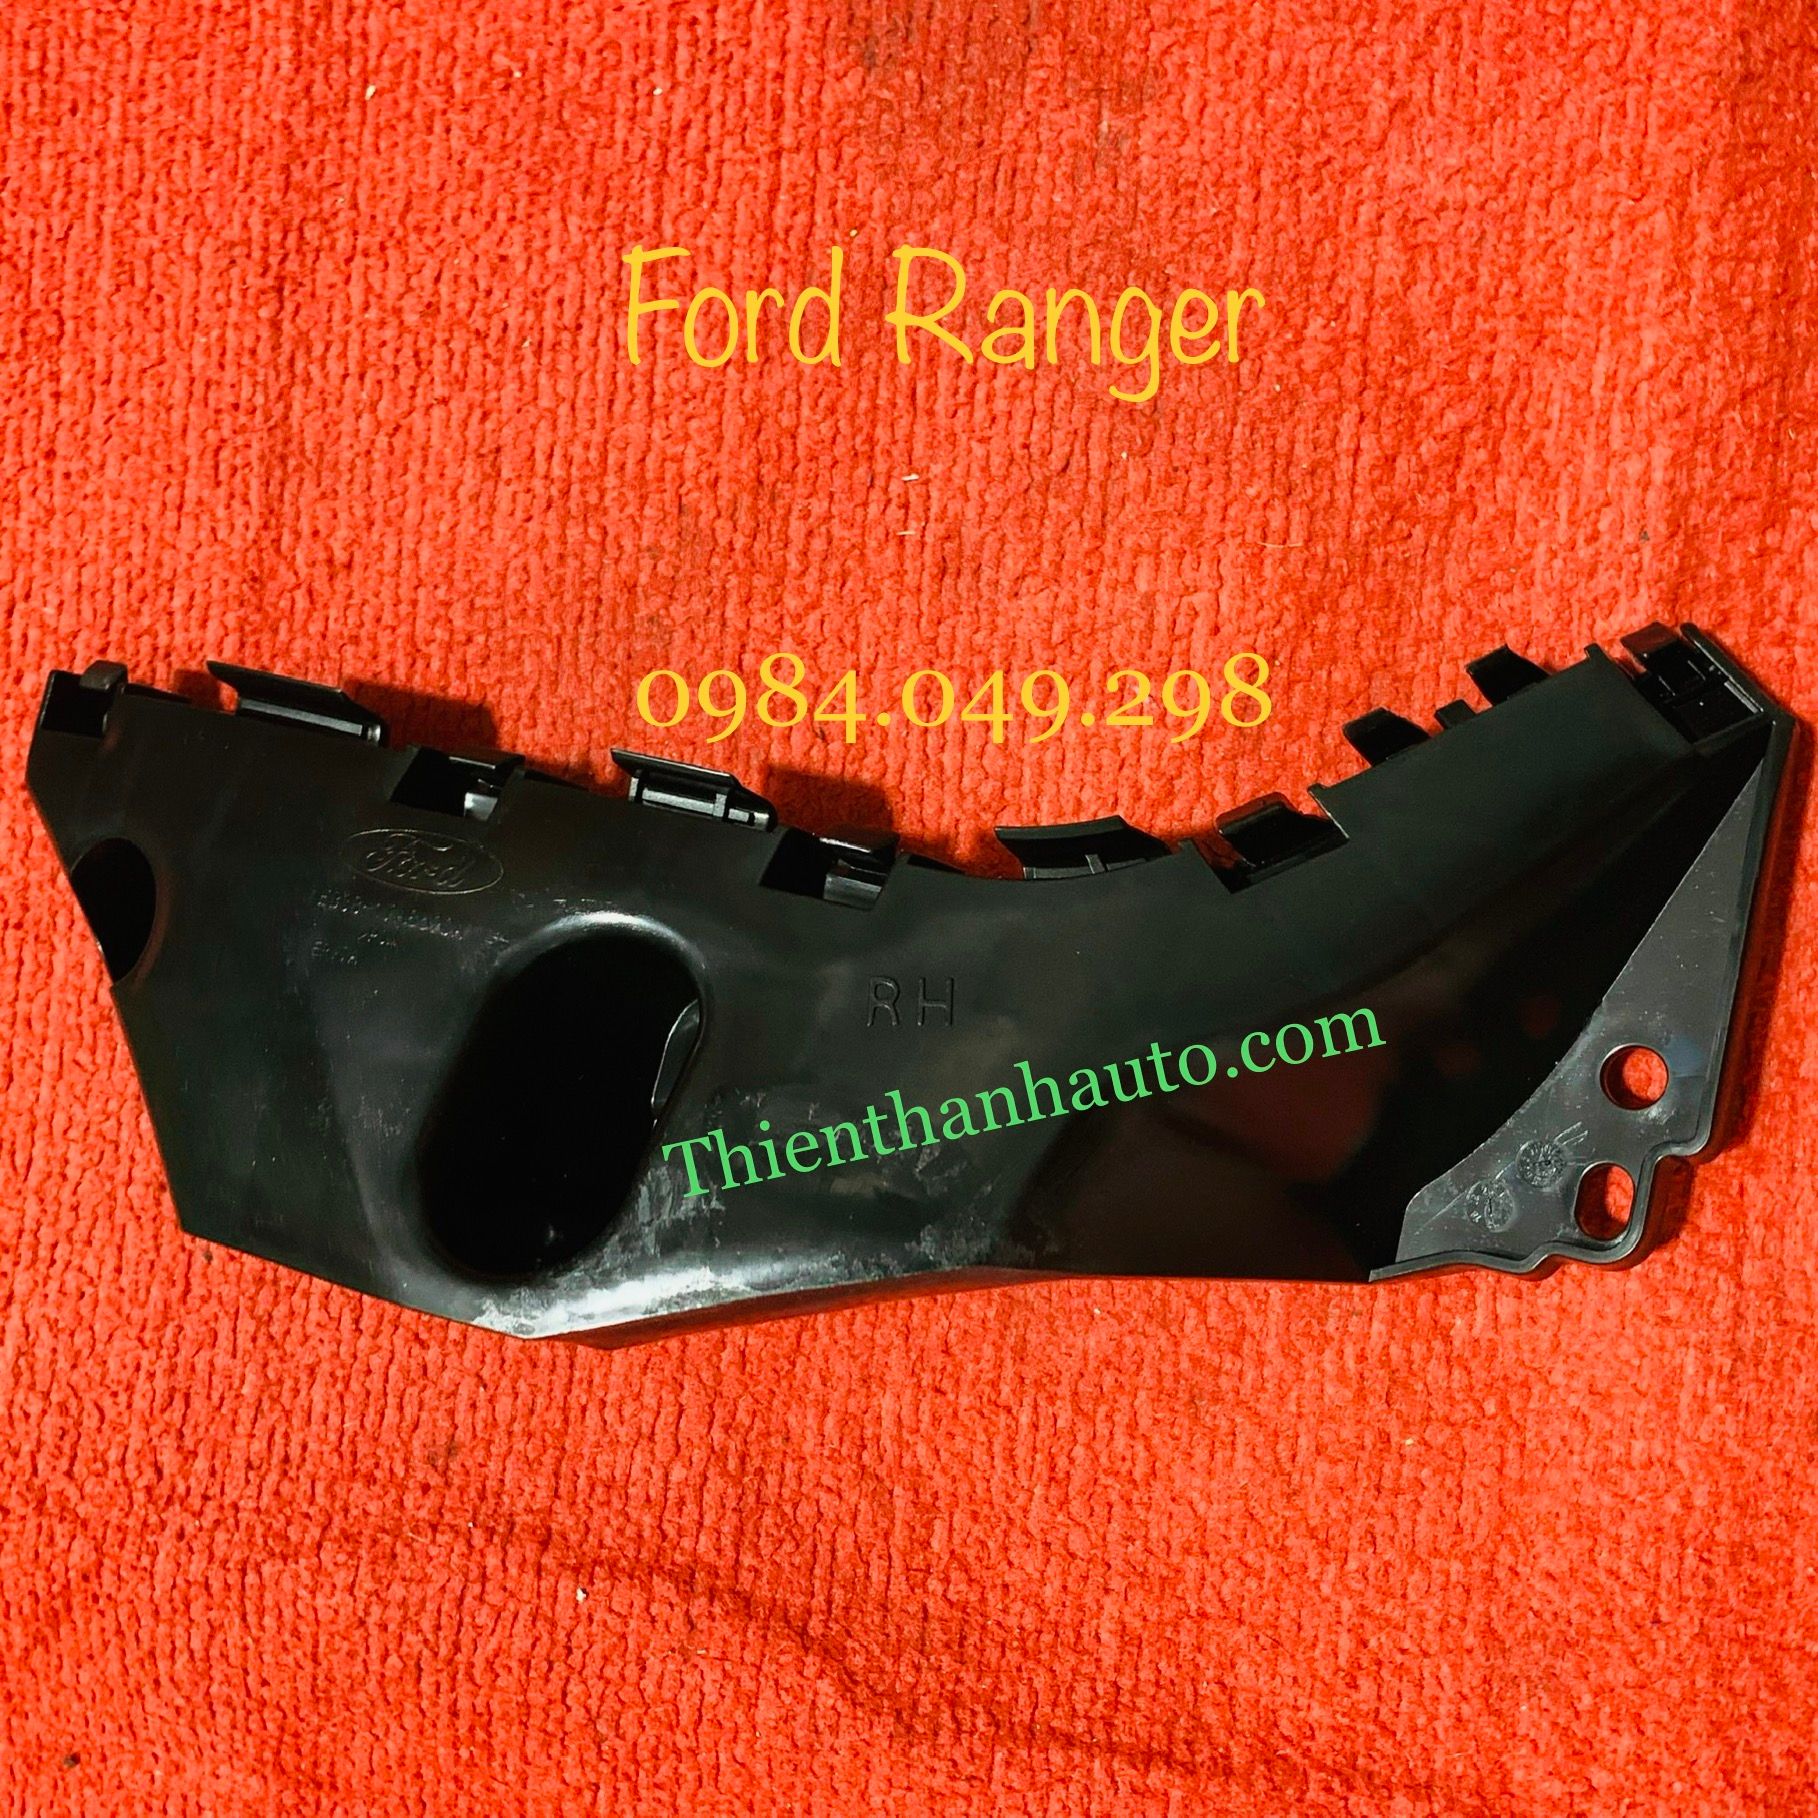 Cài cản trước Ford Ranger 2012-2018 bên phải, chính hãng - Thienthanhauto.com